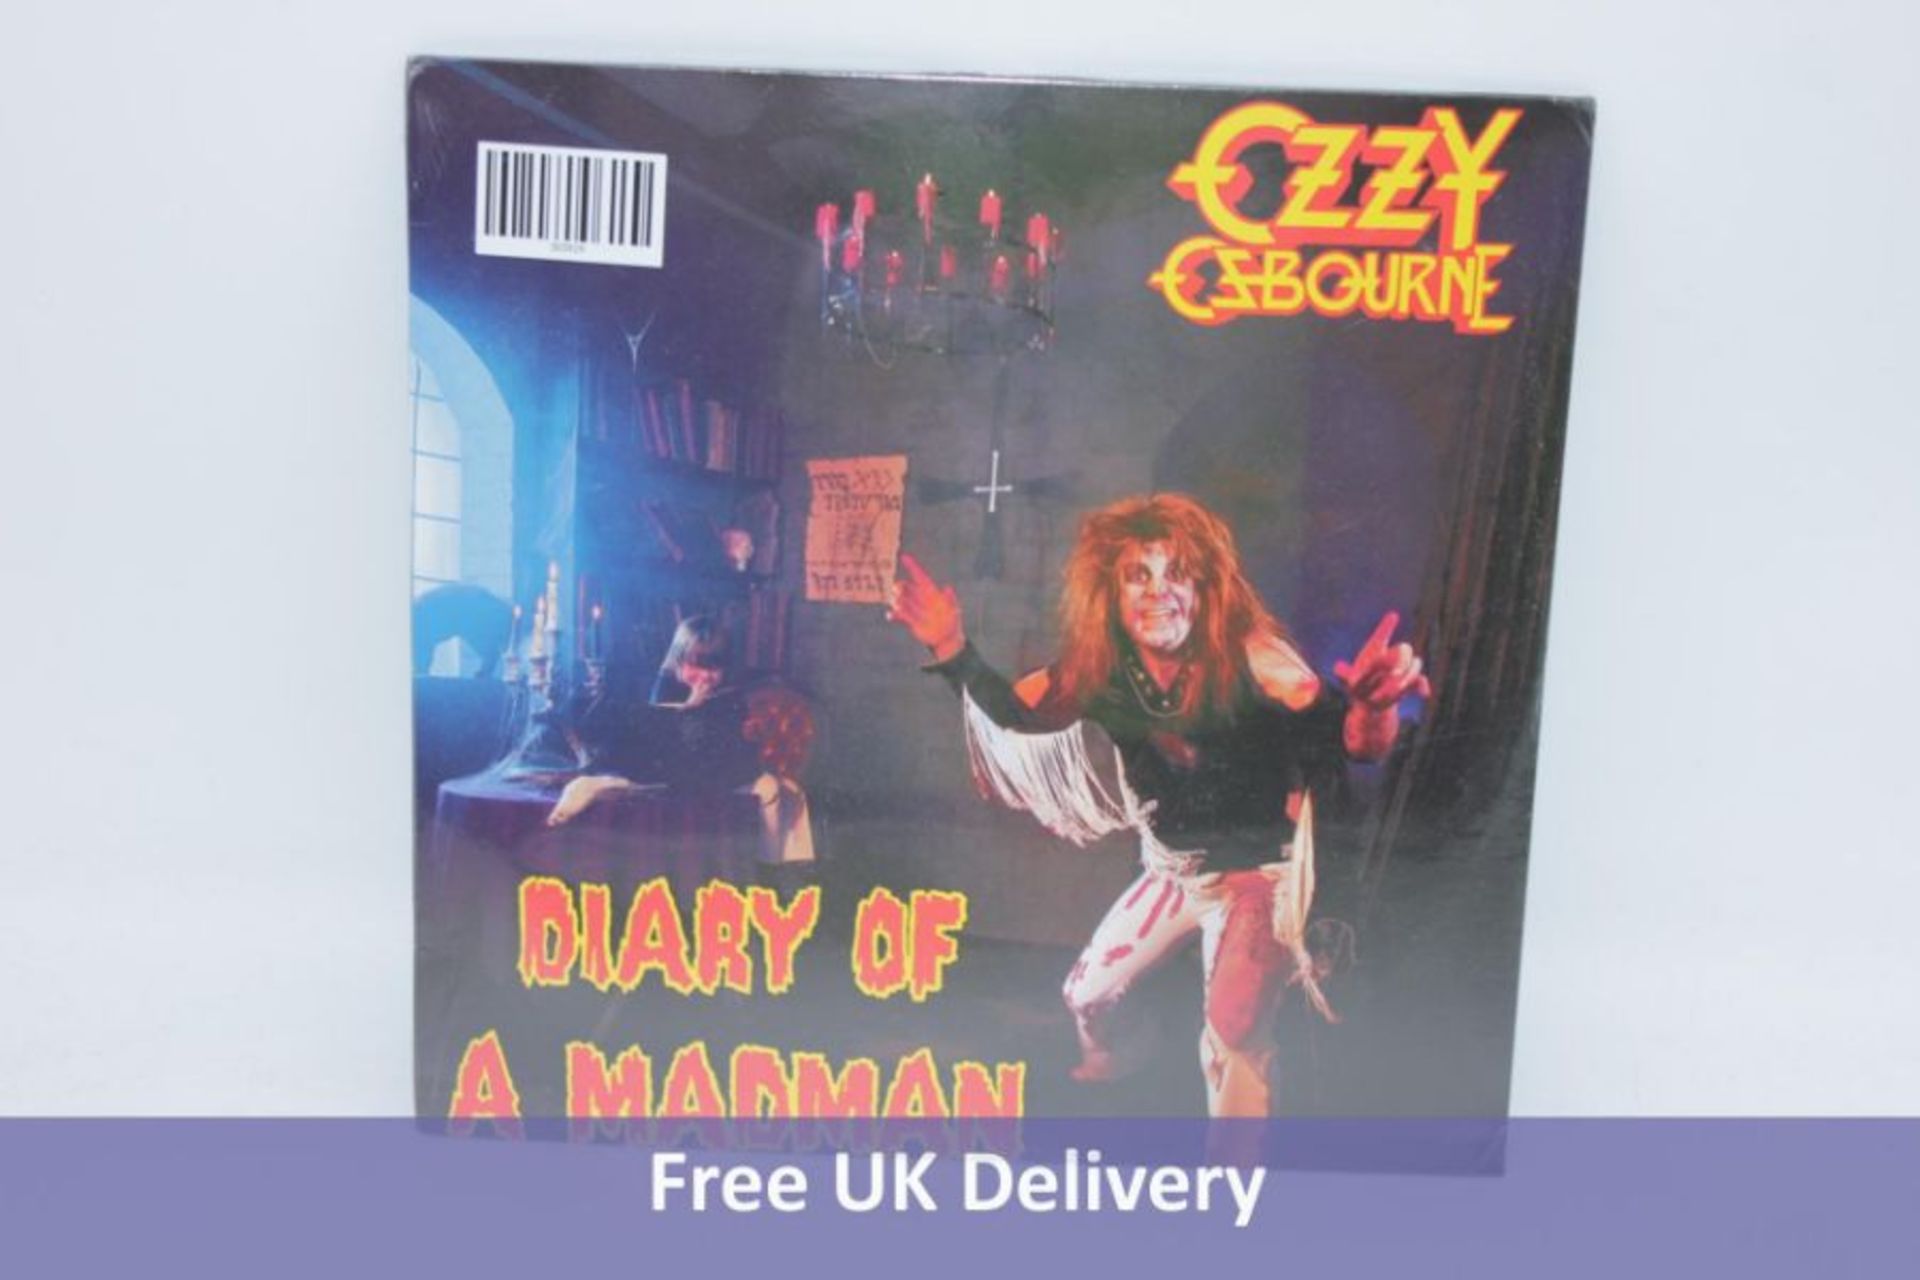 Ozzy Osbourne Diary of a Madman, 12"